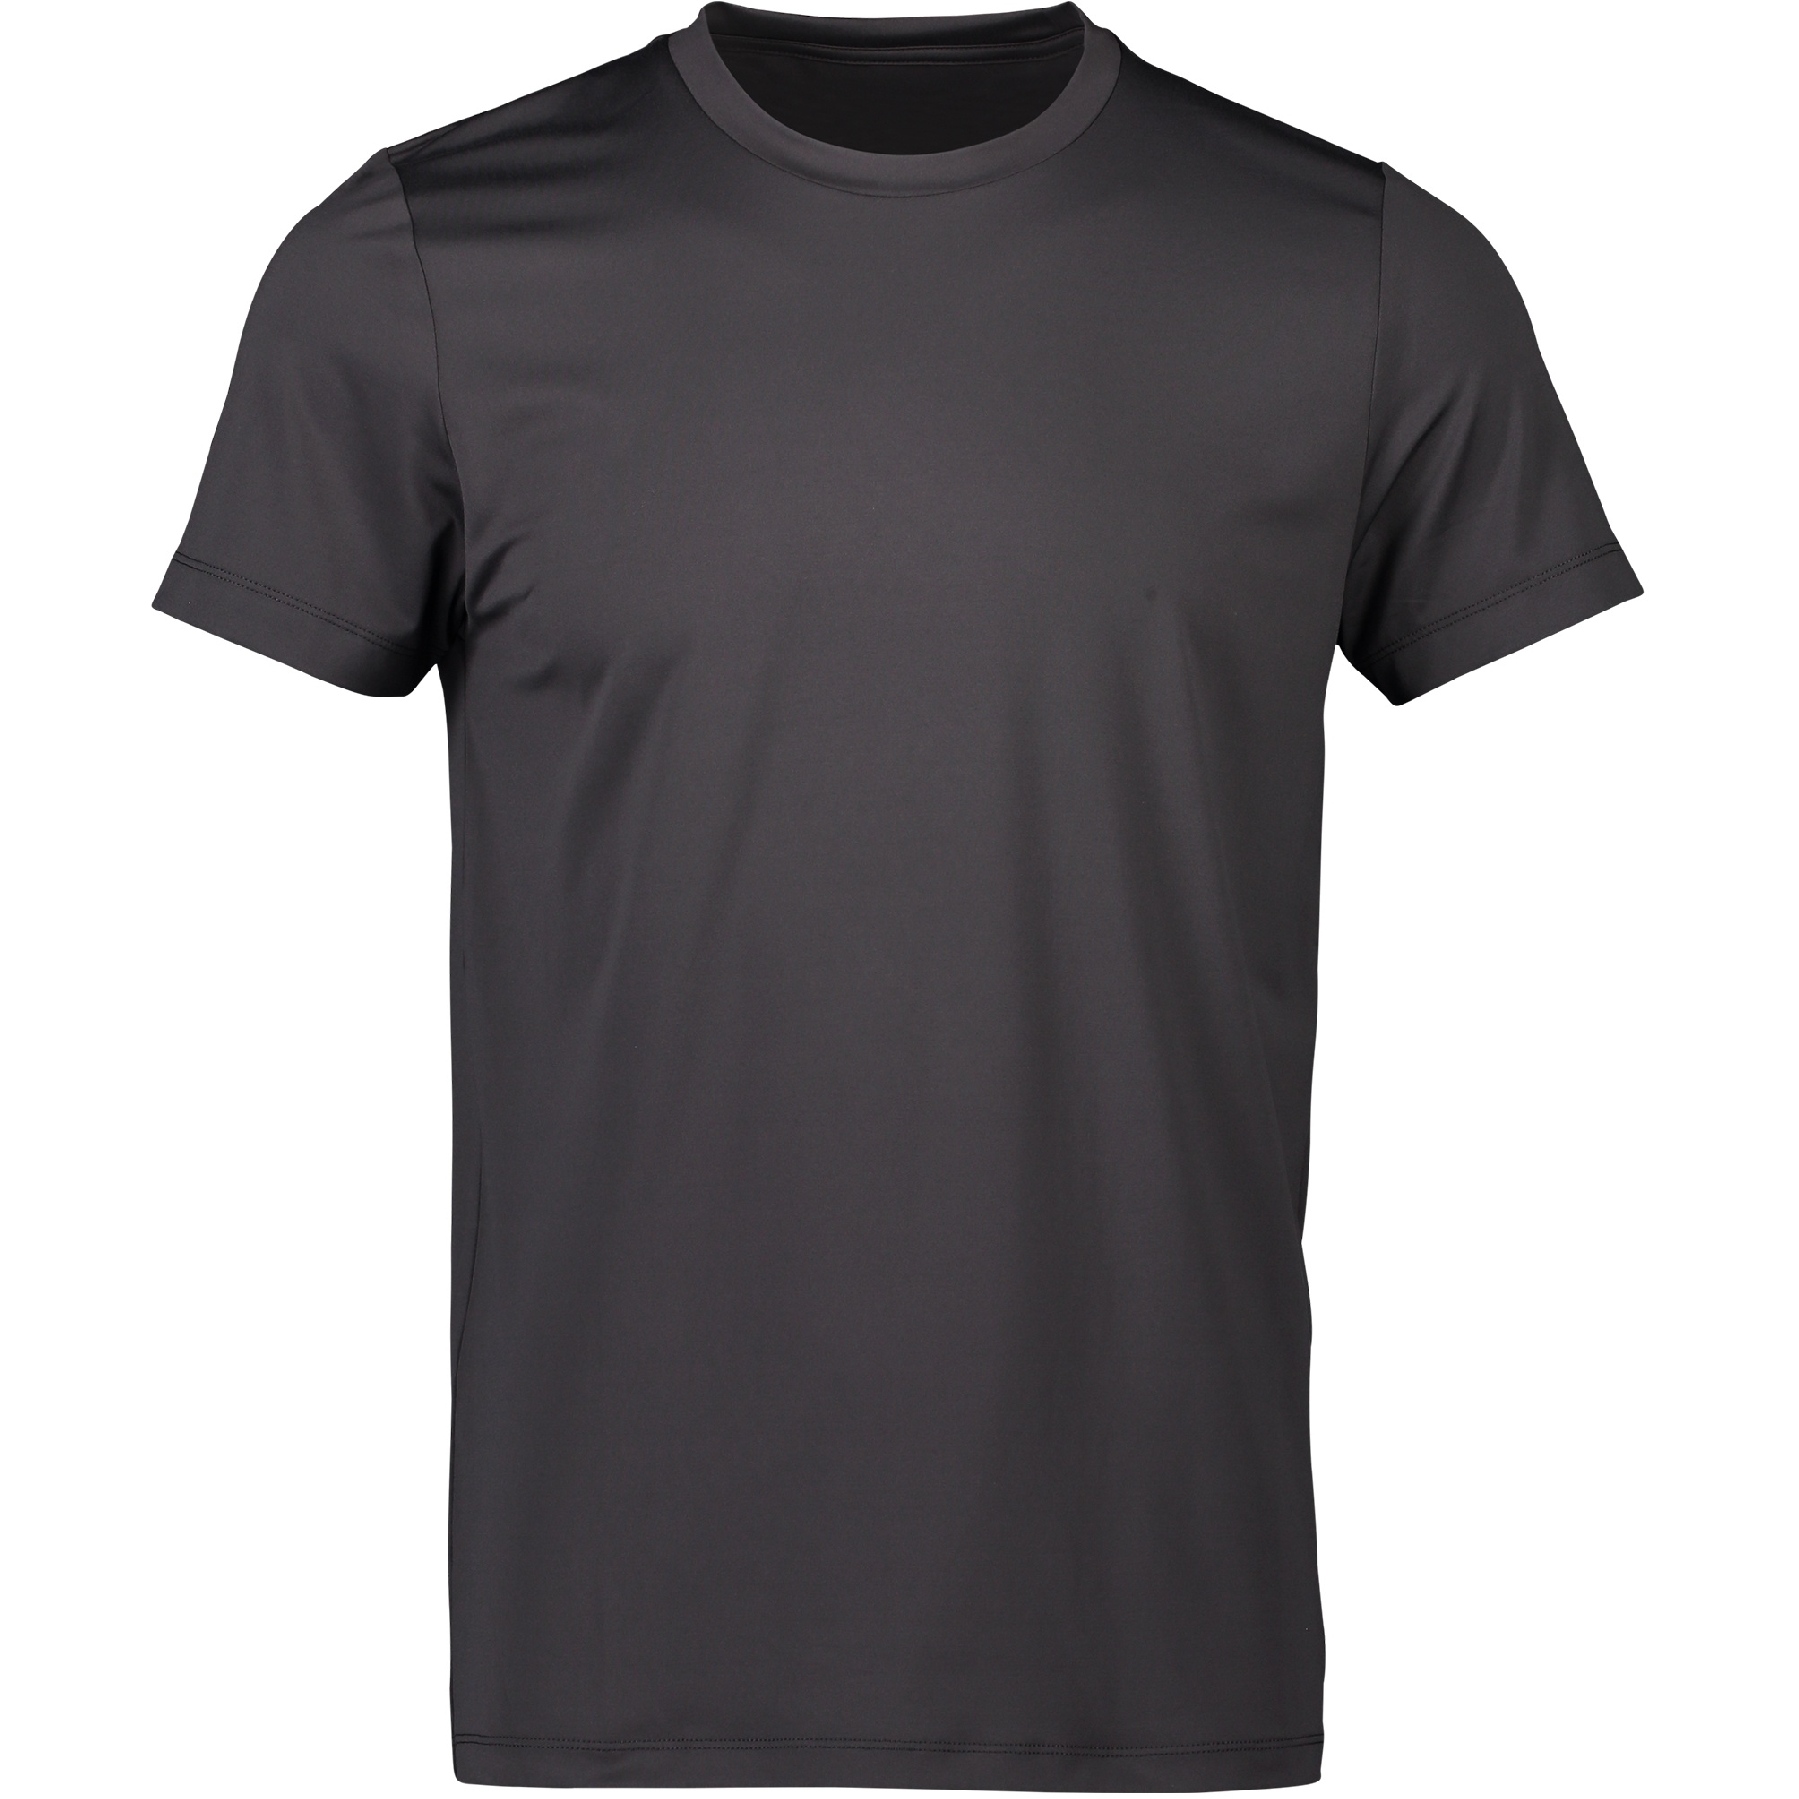 Produktbild von POC Reform Enduro Light T-Shirt Herren - 1043 Sylvanite Grey